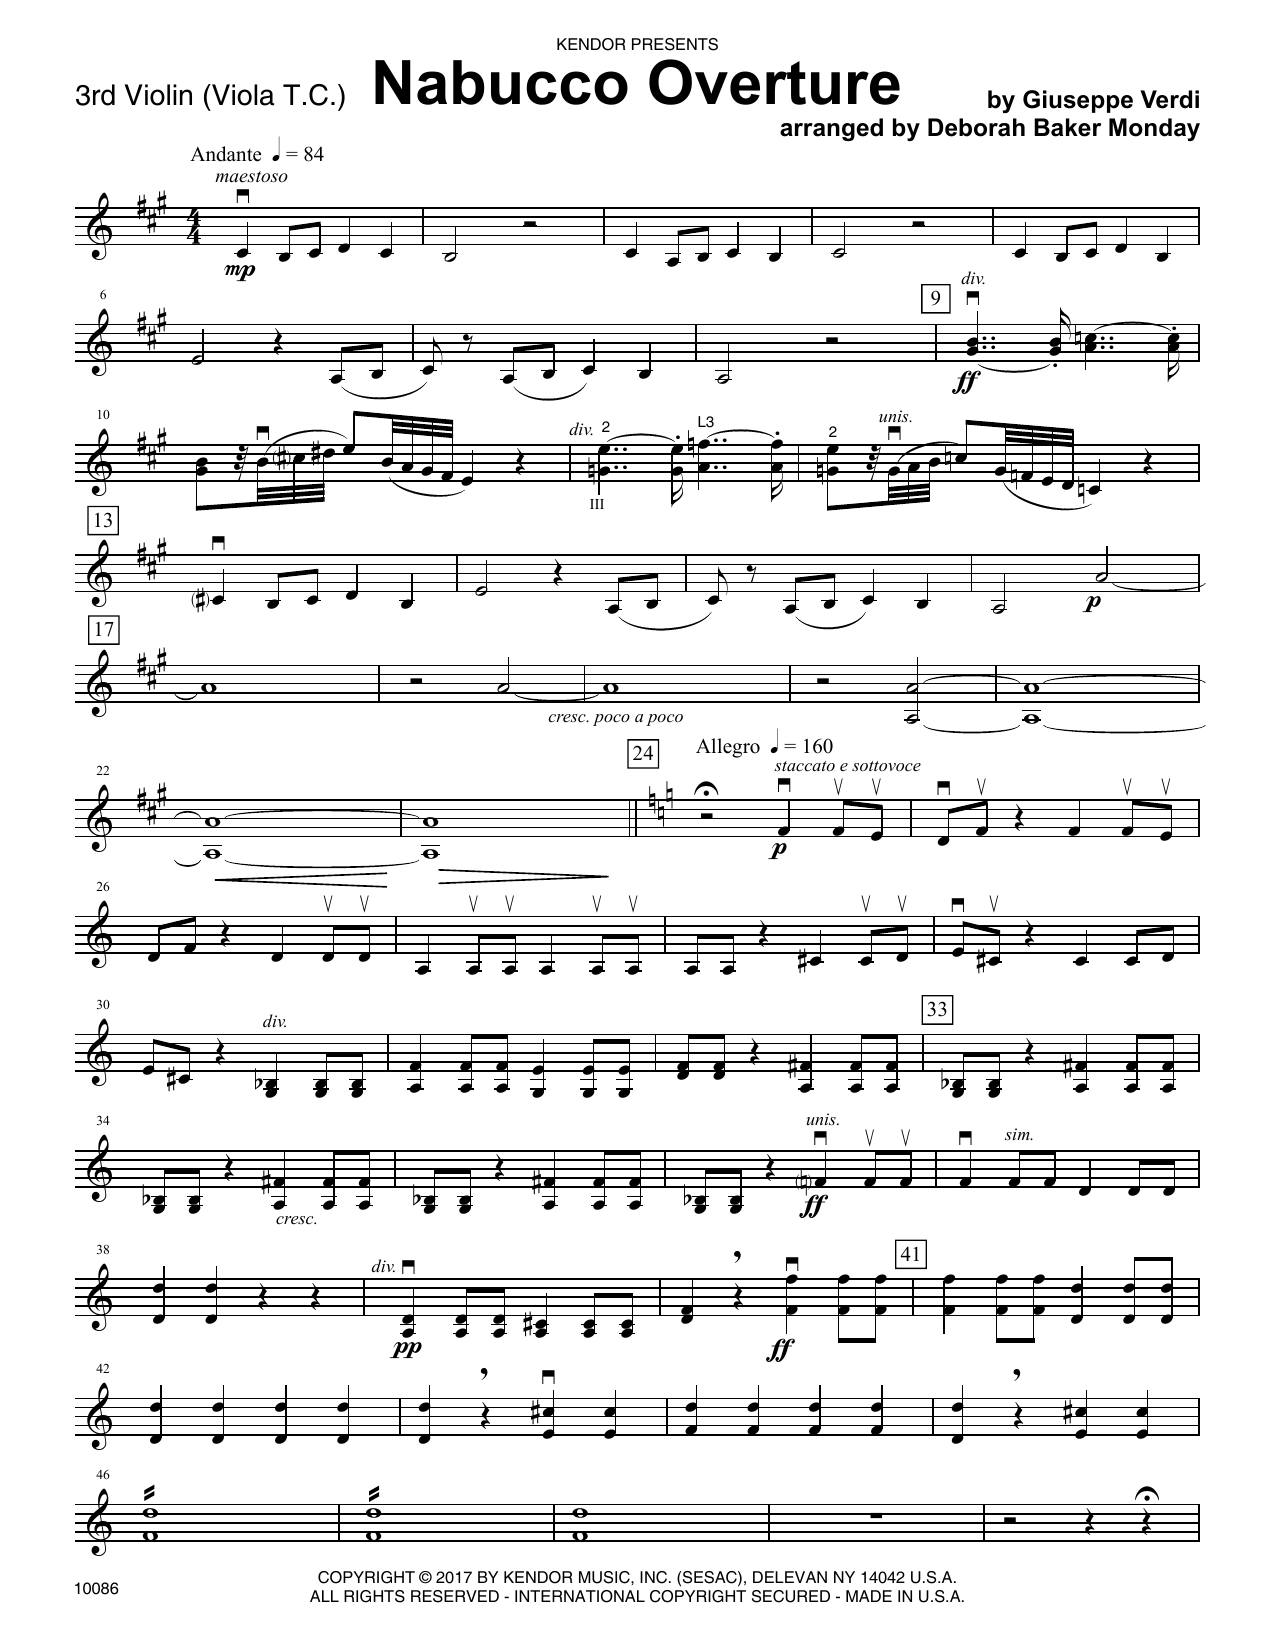 Download Deborah Baker Monday Nabucco Overture - Violin 3 (Viola T.C. Sheet Music